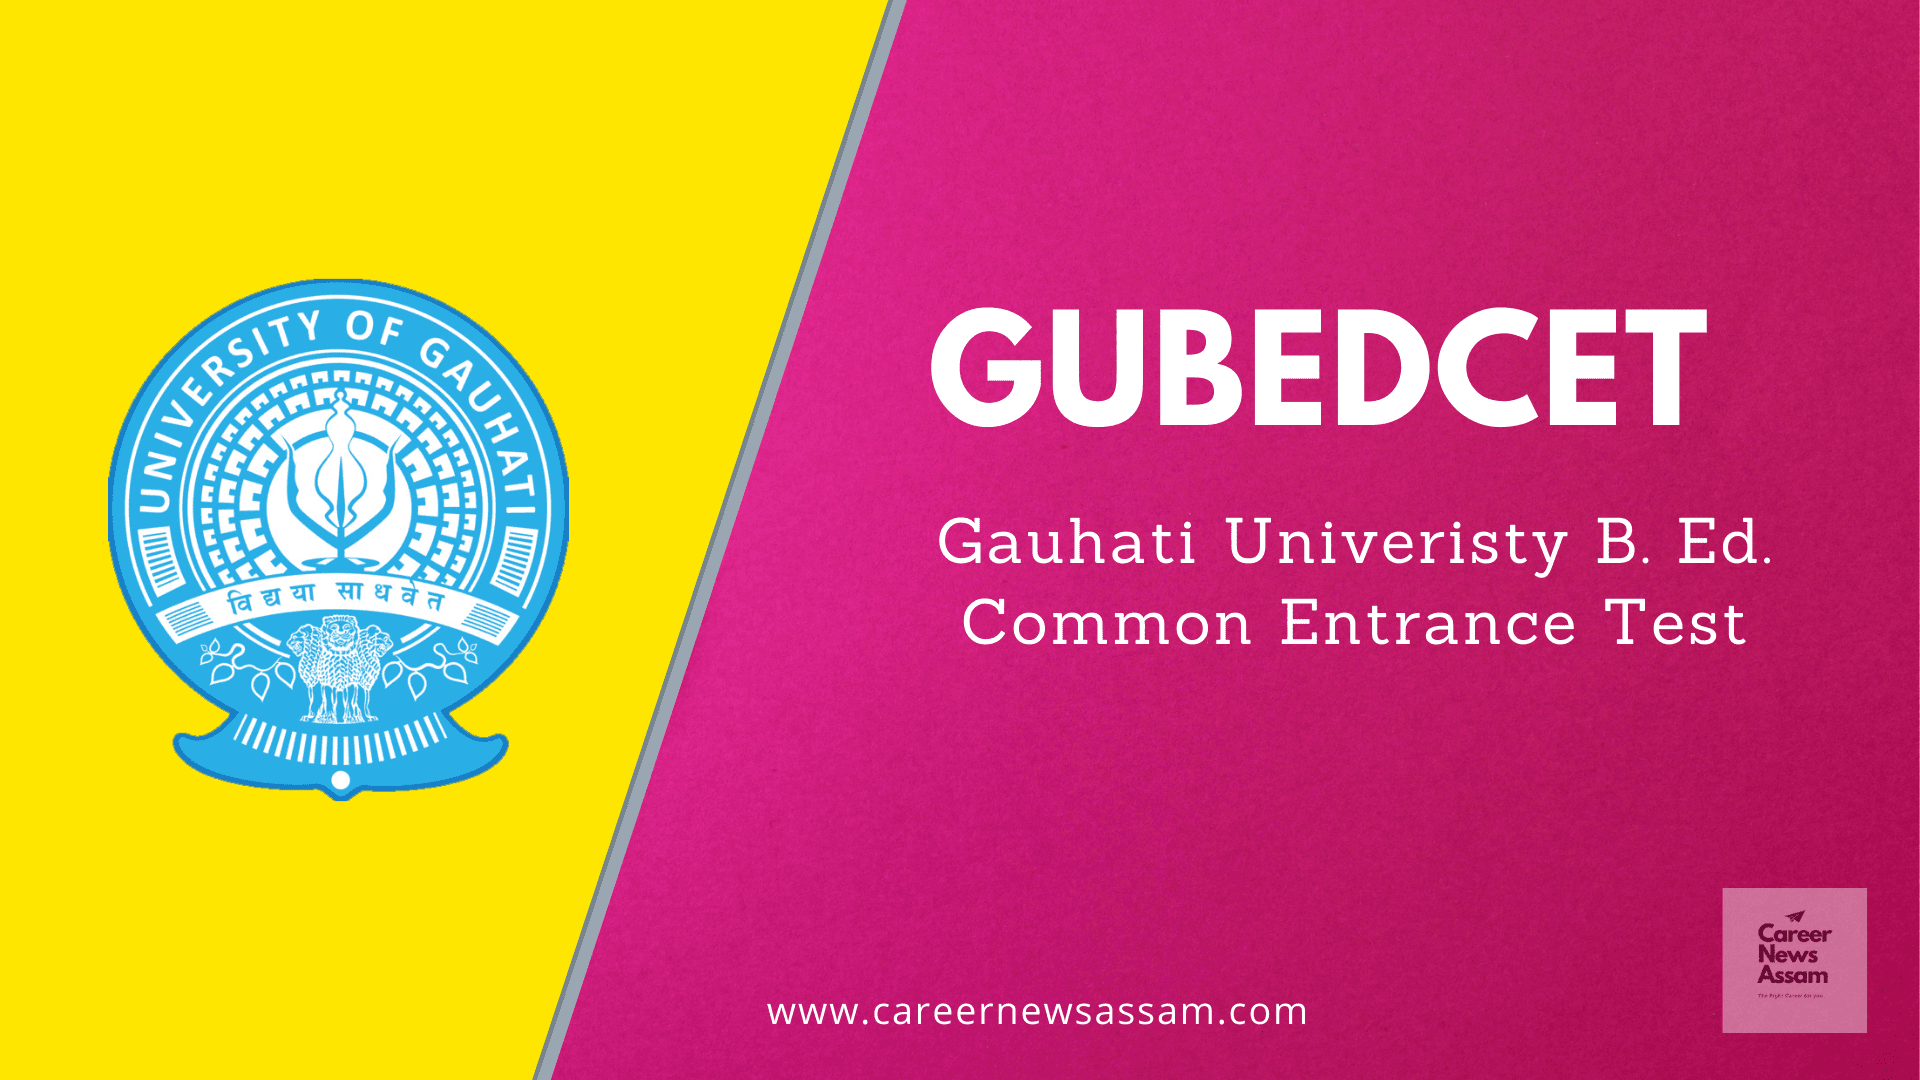 Gauhati University B. Ed. Admission